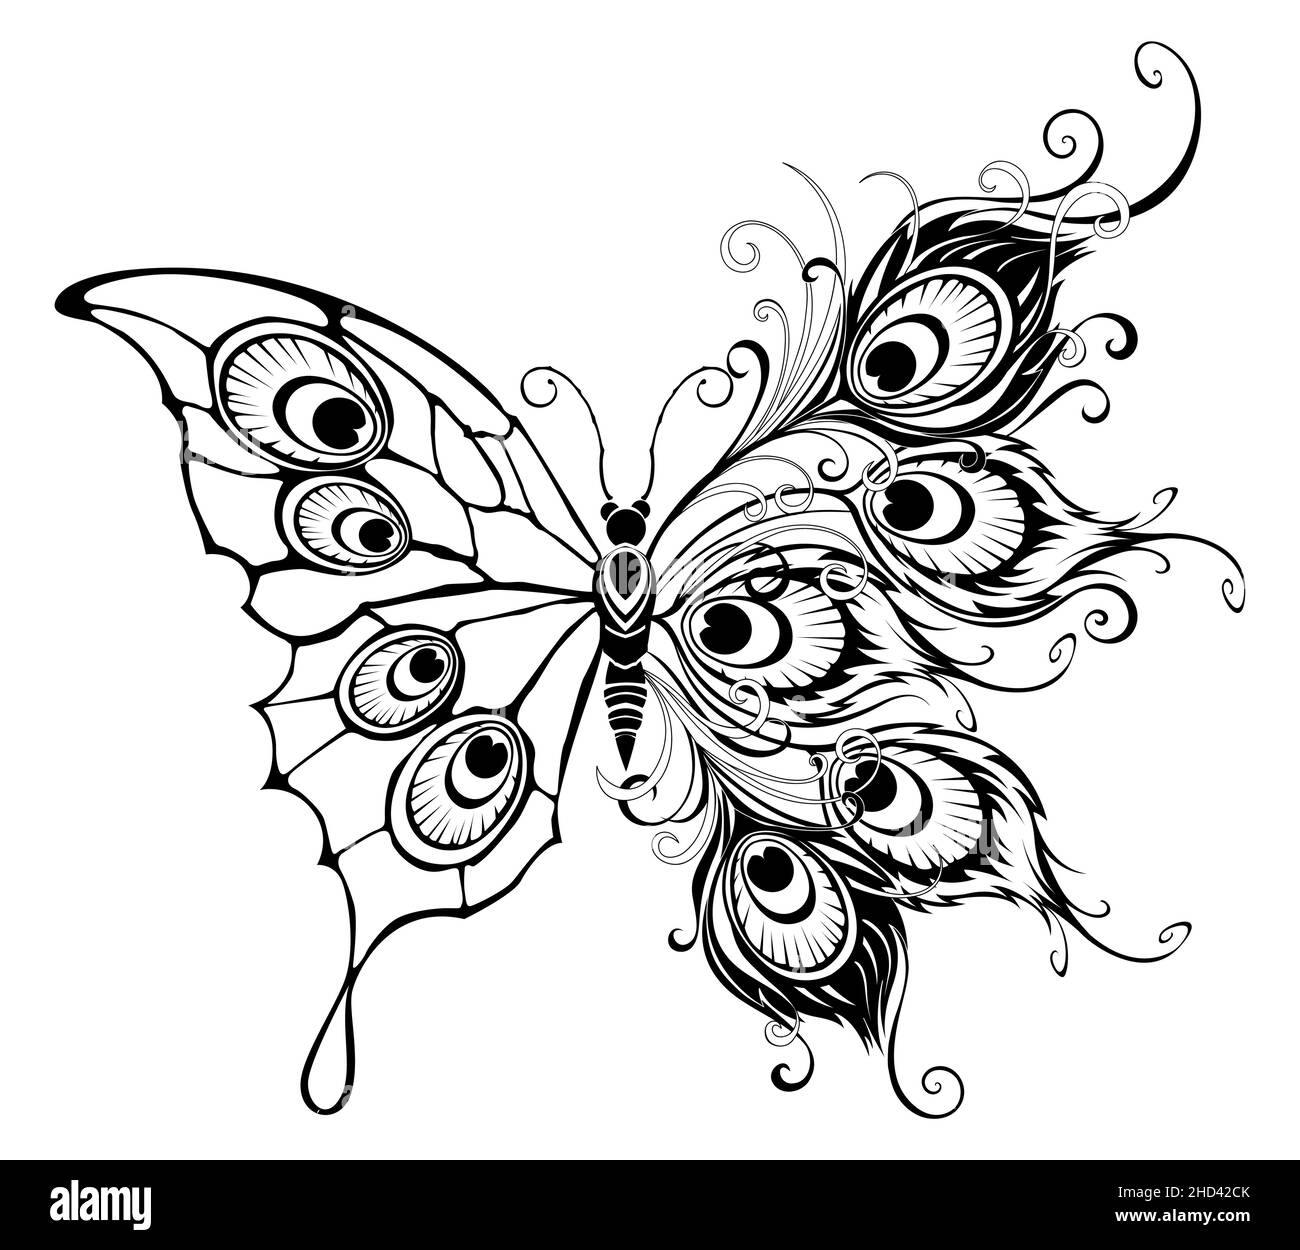 Artísticamente dibujado, contorneado, aislado, inusual mariposa de pavo real, con alas decoradas con estilo tatuaje de pavo real. Ilustración del Vector